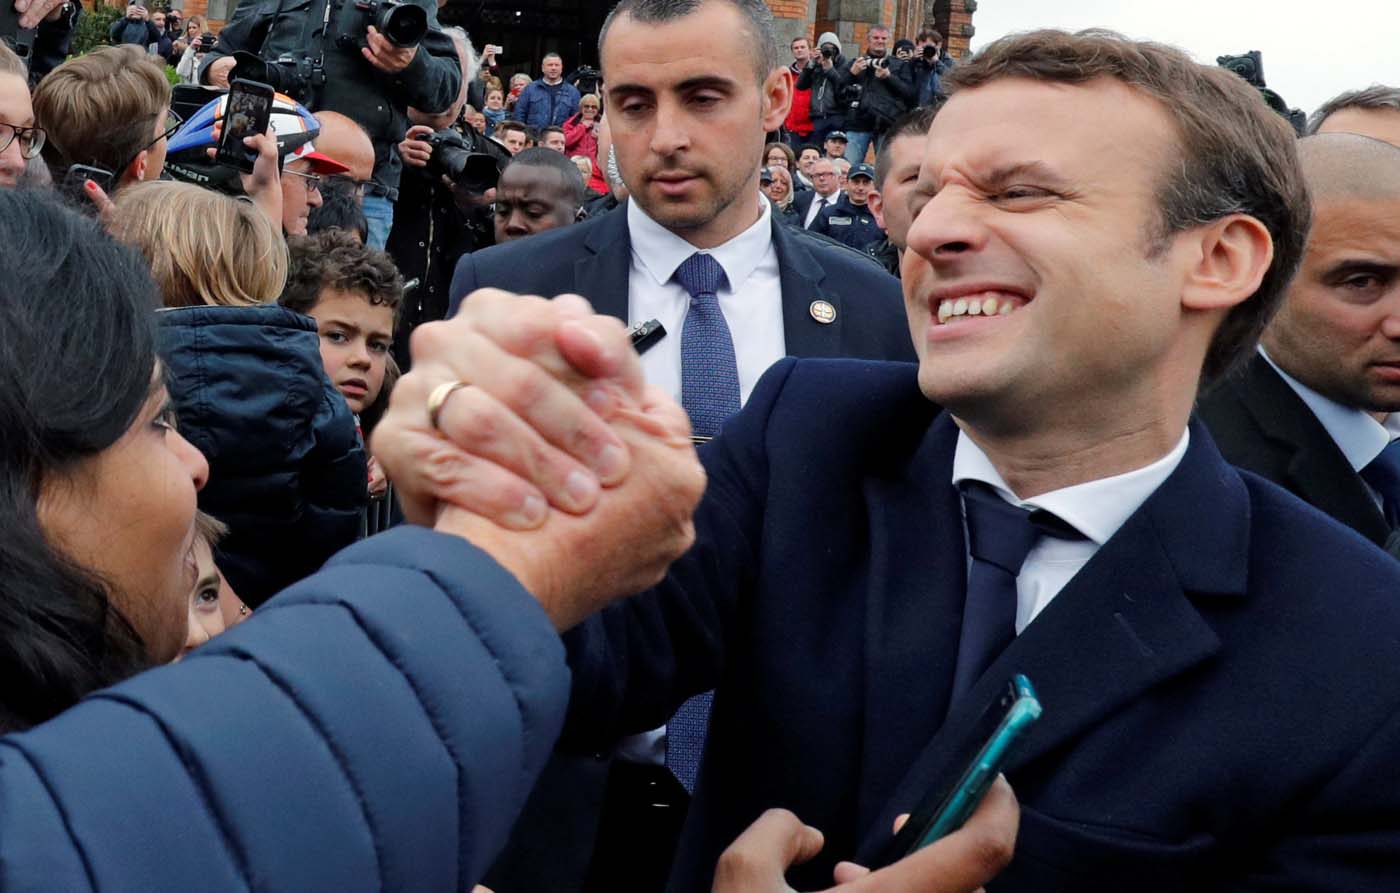 Macron ganó elecciones en Francia con 66,1% contra 33,9% para Le Pen